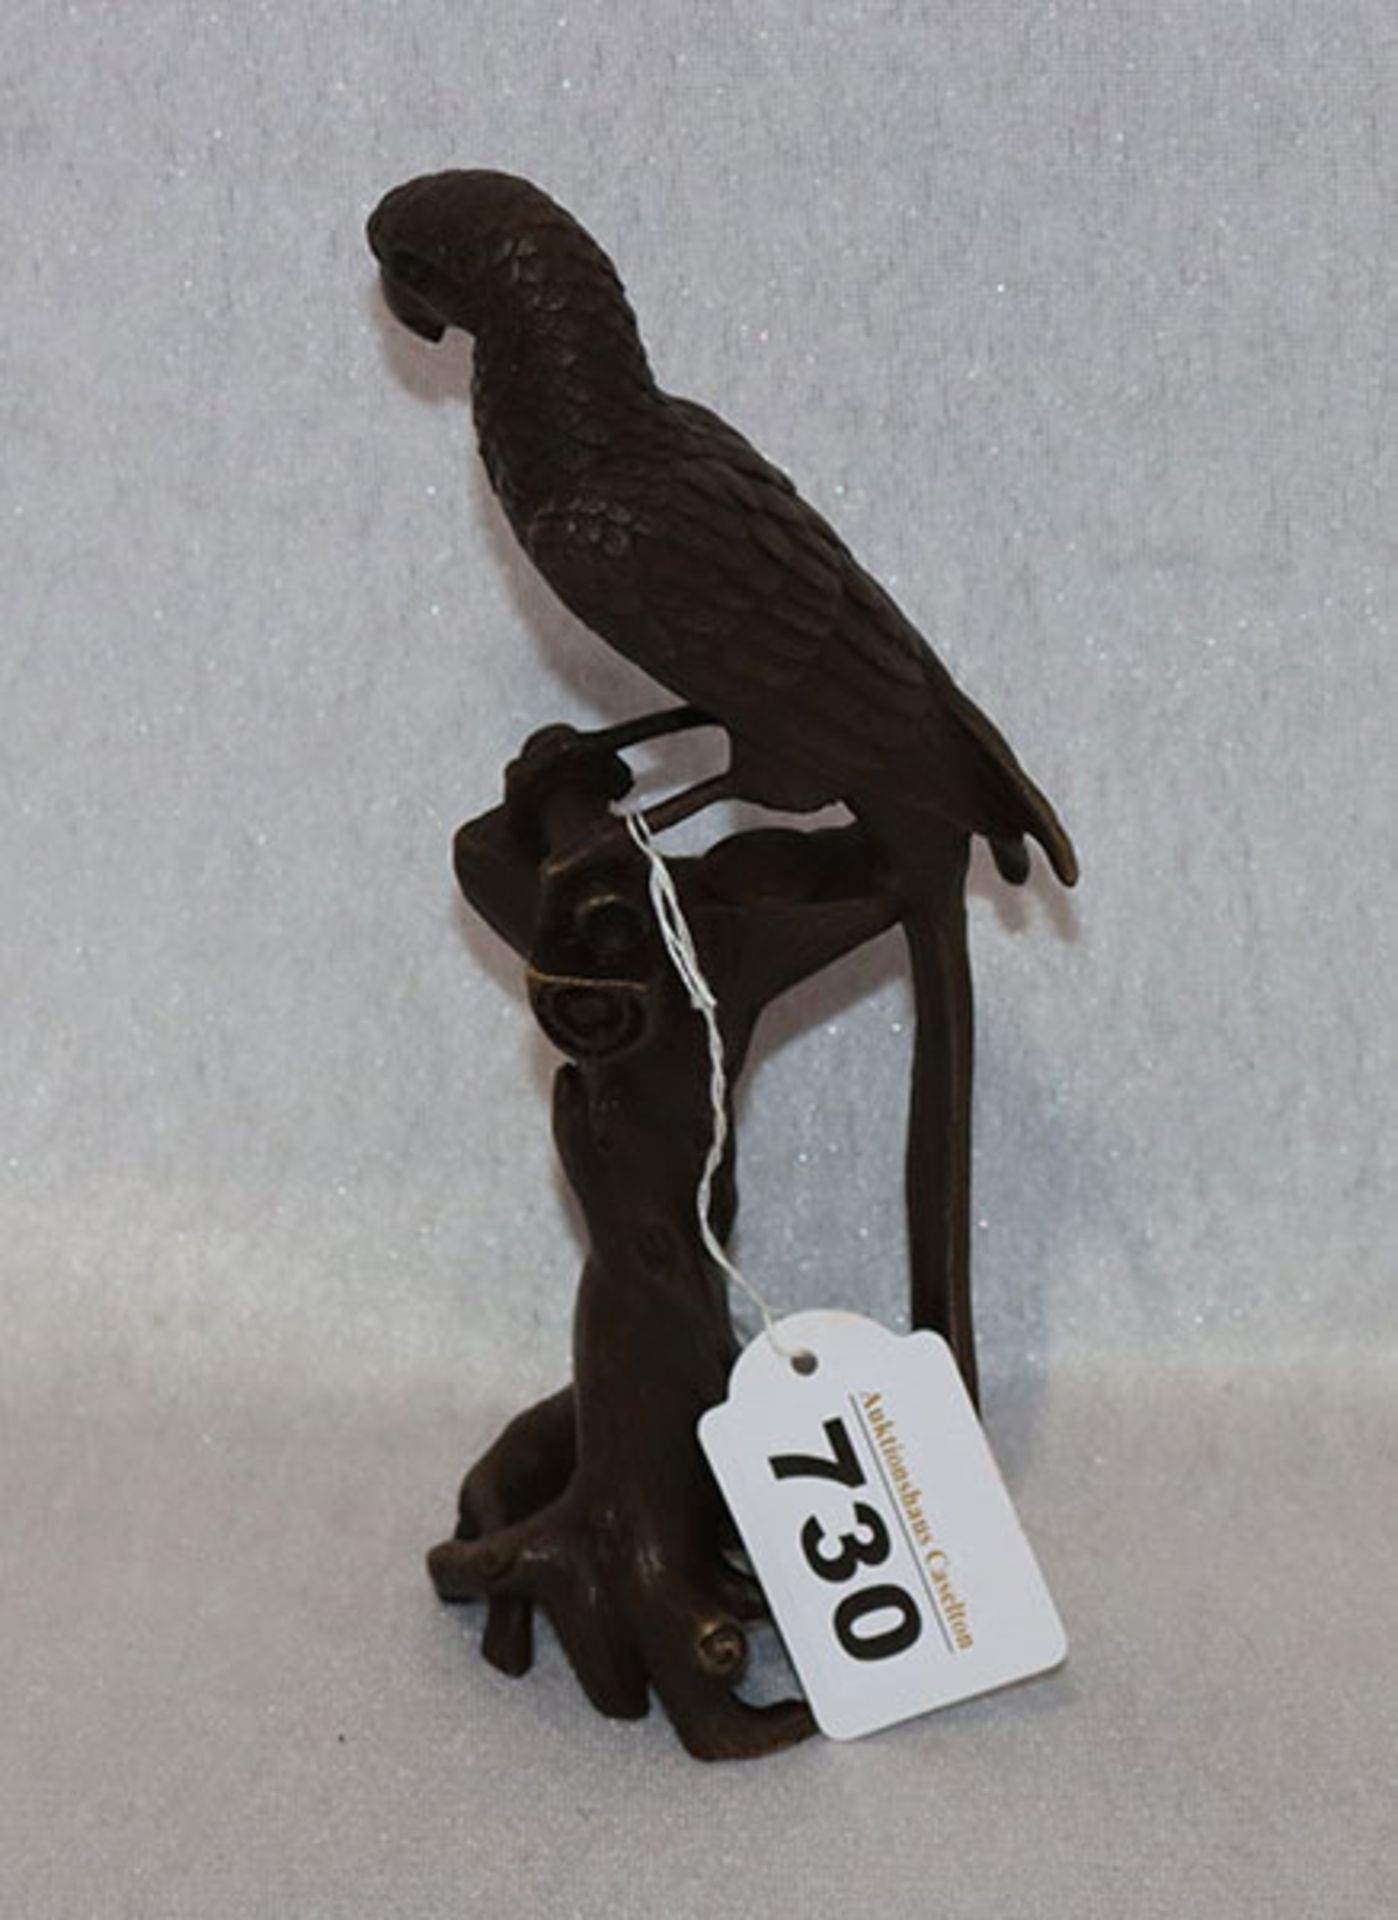 Metallskulptur, verbronzt 'Papagei auf Ständer', H 19 cm, leicht berieben